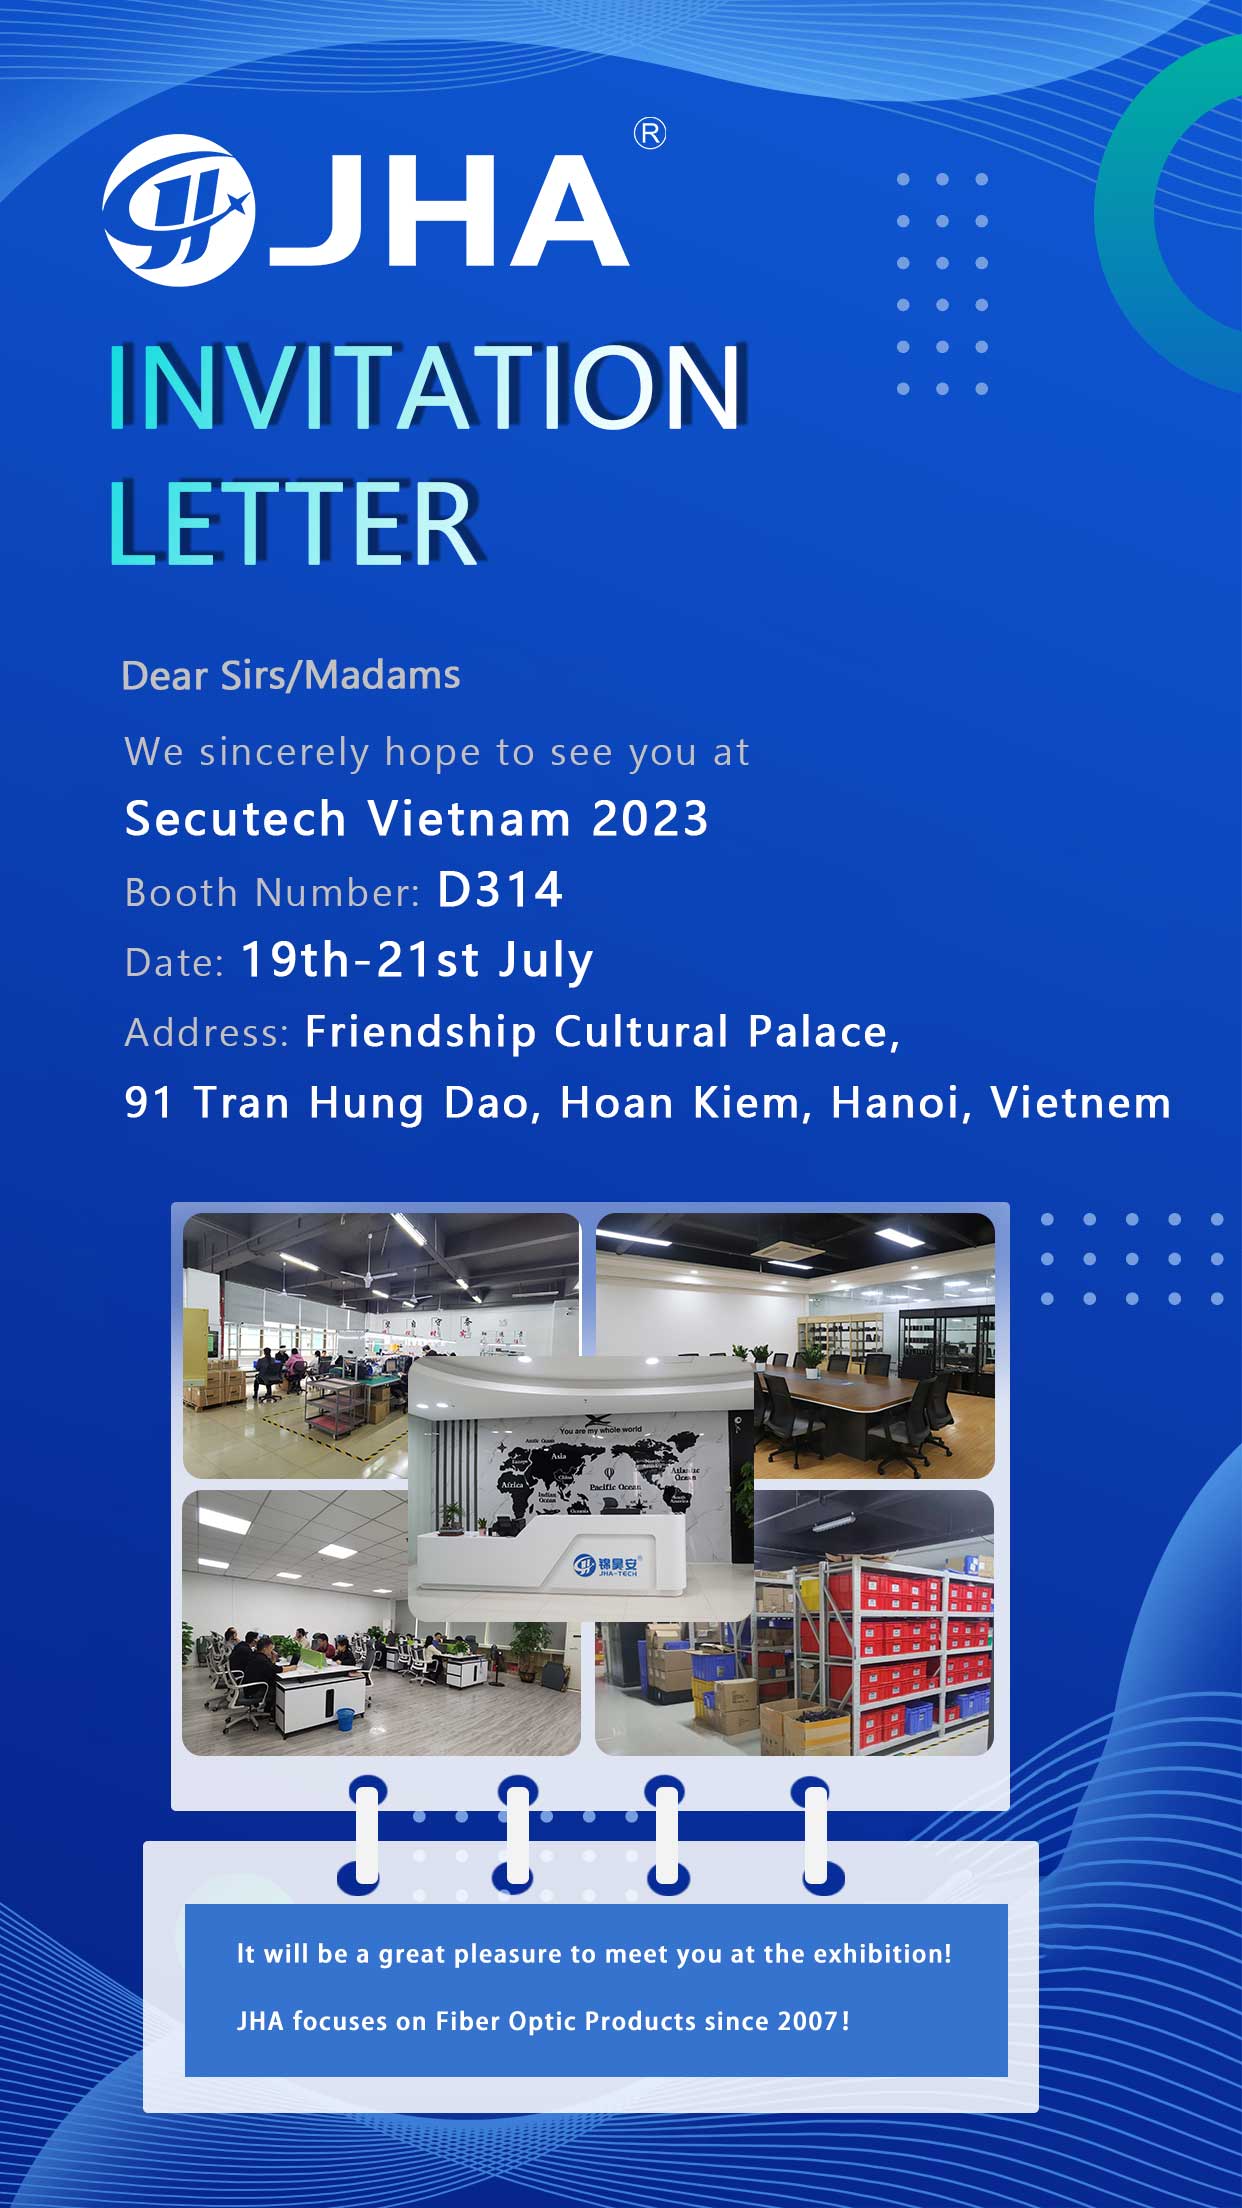 Liity meihin Secutech Vietnam 2023:ssa – osastonumero D314